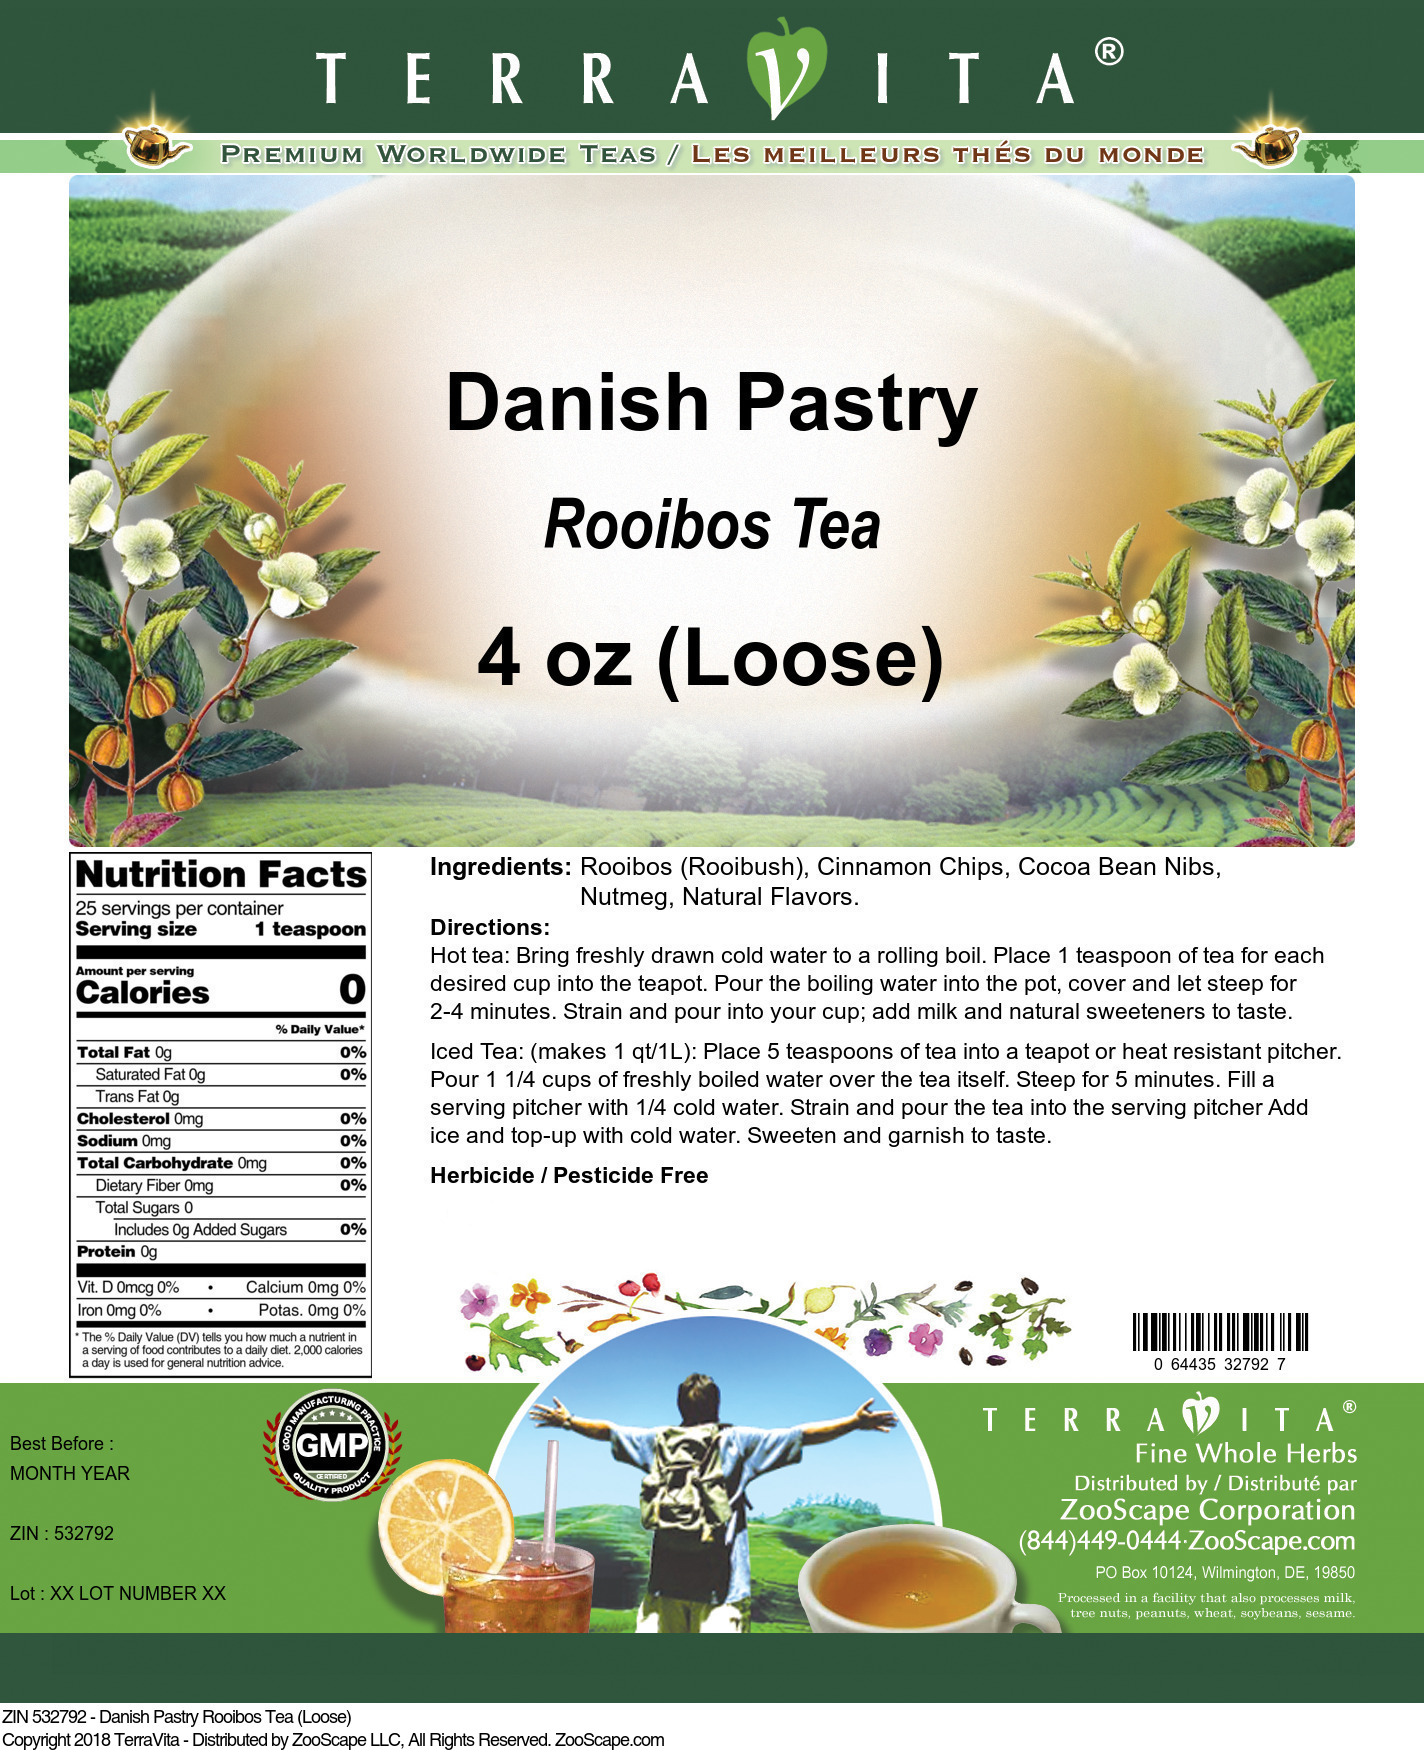 Danish Pastry Rooibos Tea (Loose) - Label